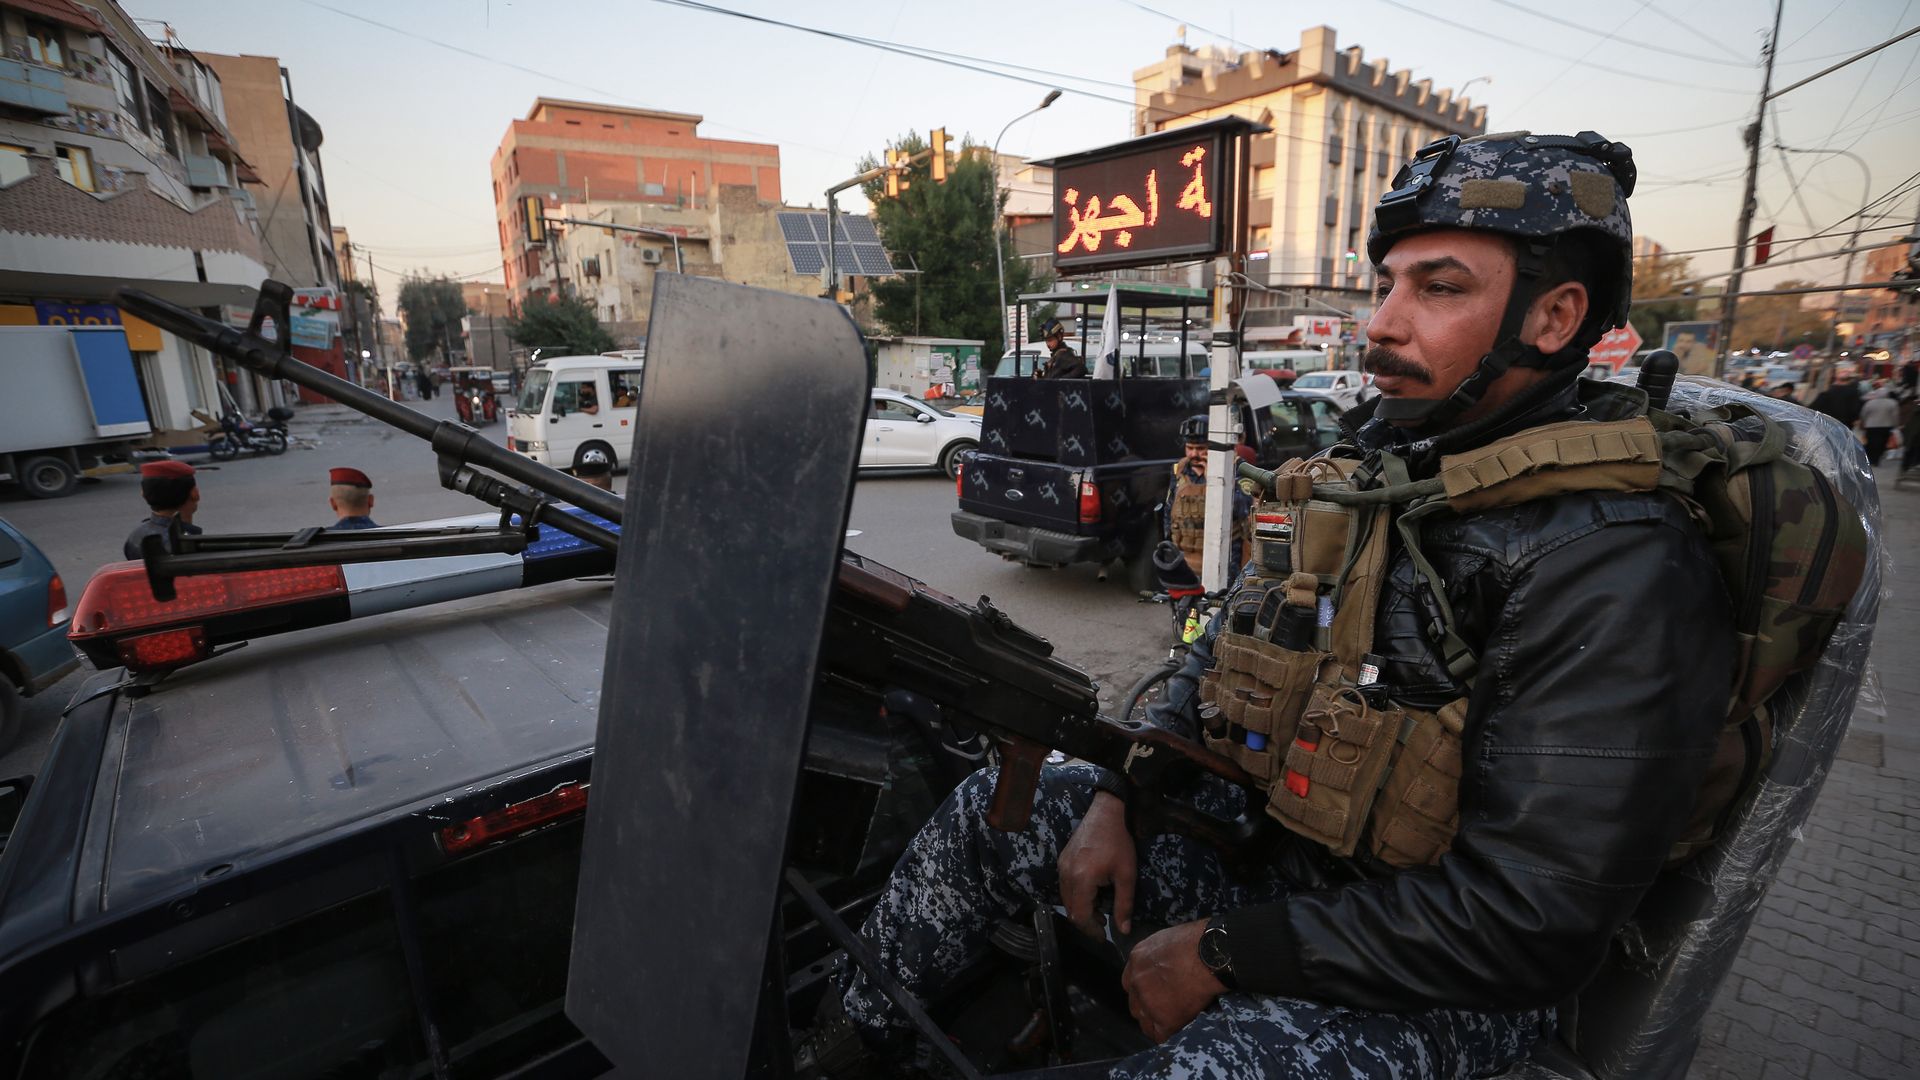 يظهر ضابط شرطة جالسا على مدفع رشاش محمول على سيارة بعد هجوم صاروخي في بغداد.